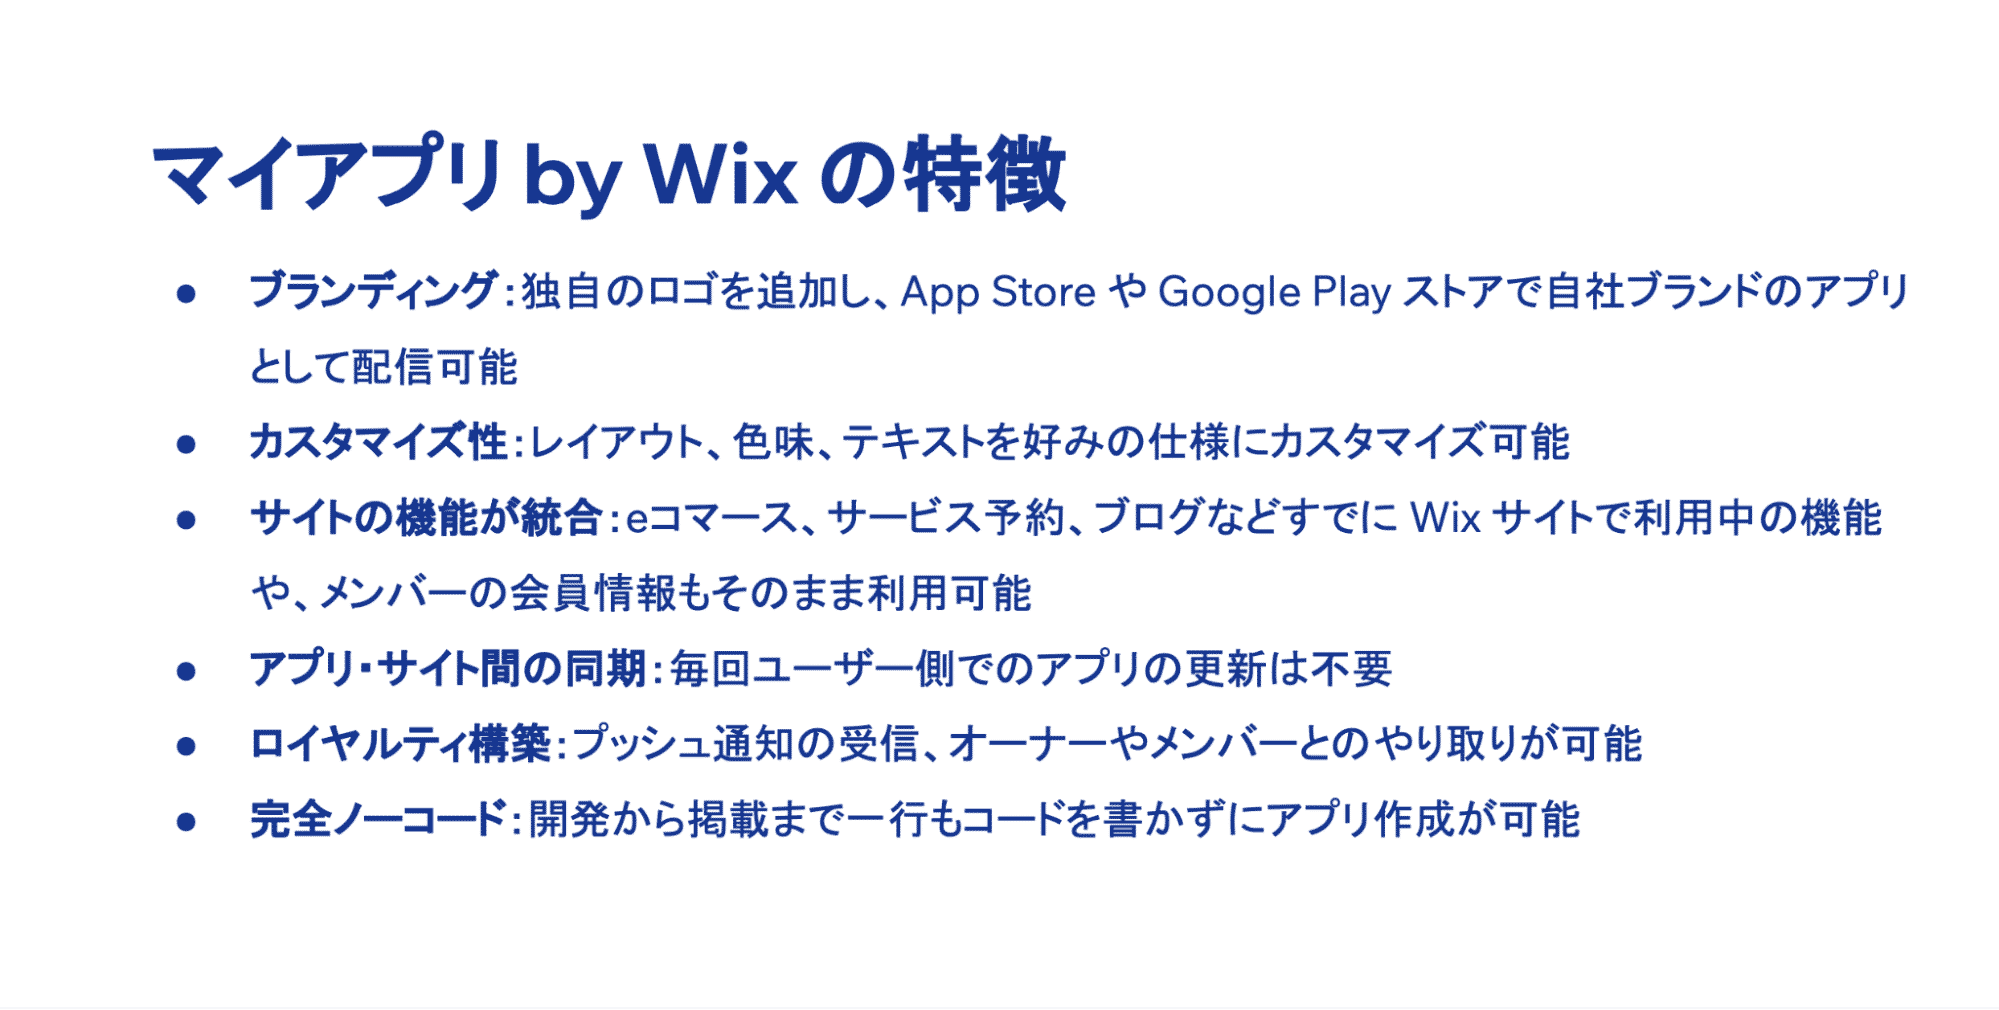 マイアプリby Wixの特徴